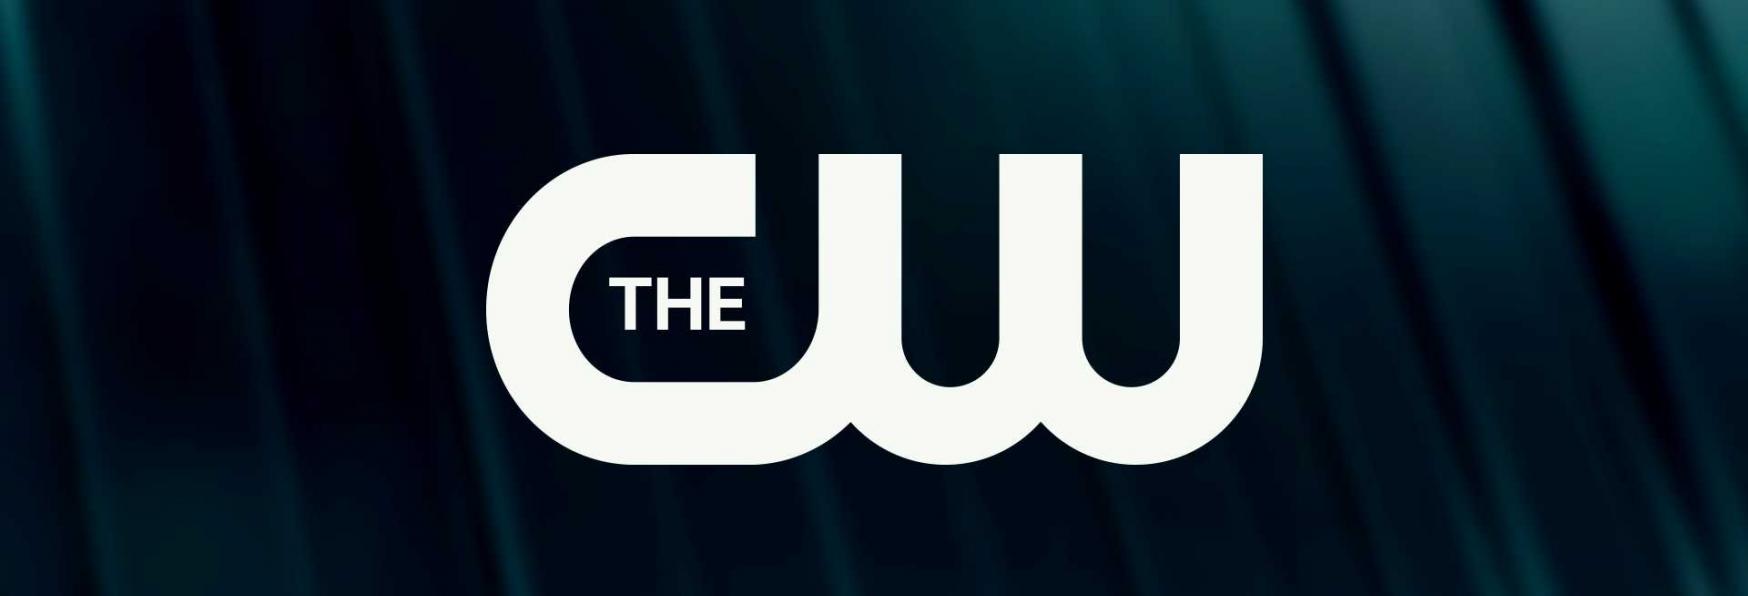 Jake Chang: The CW al lavoro sulla nuova Serie TV Archie Comics